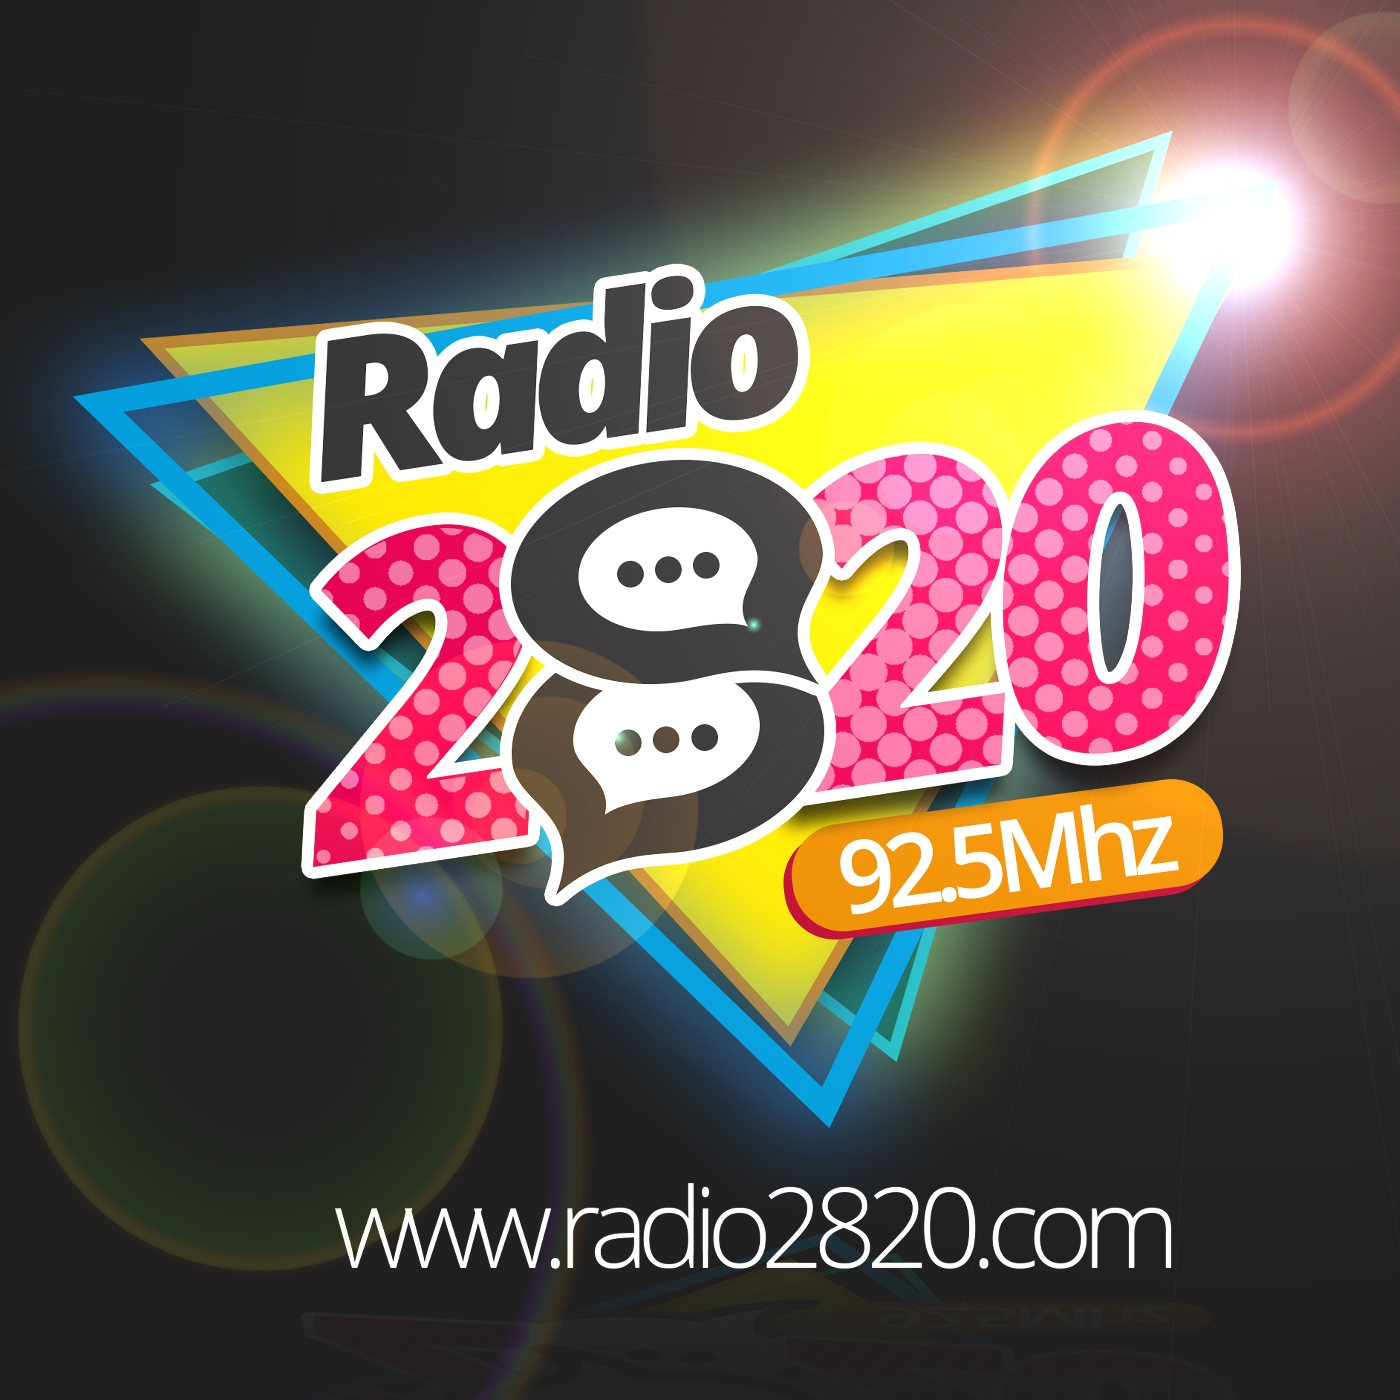 Radio 2820